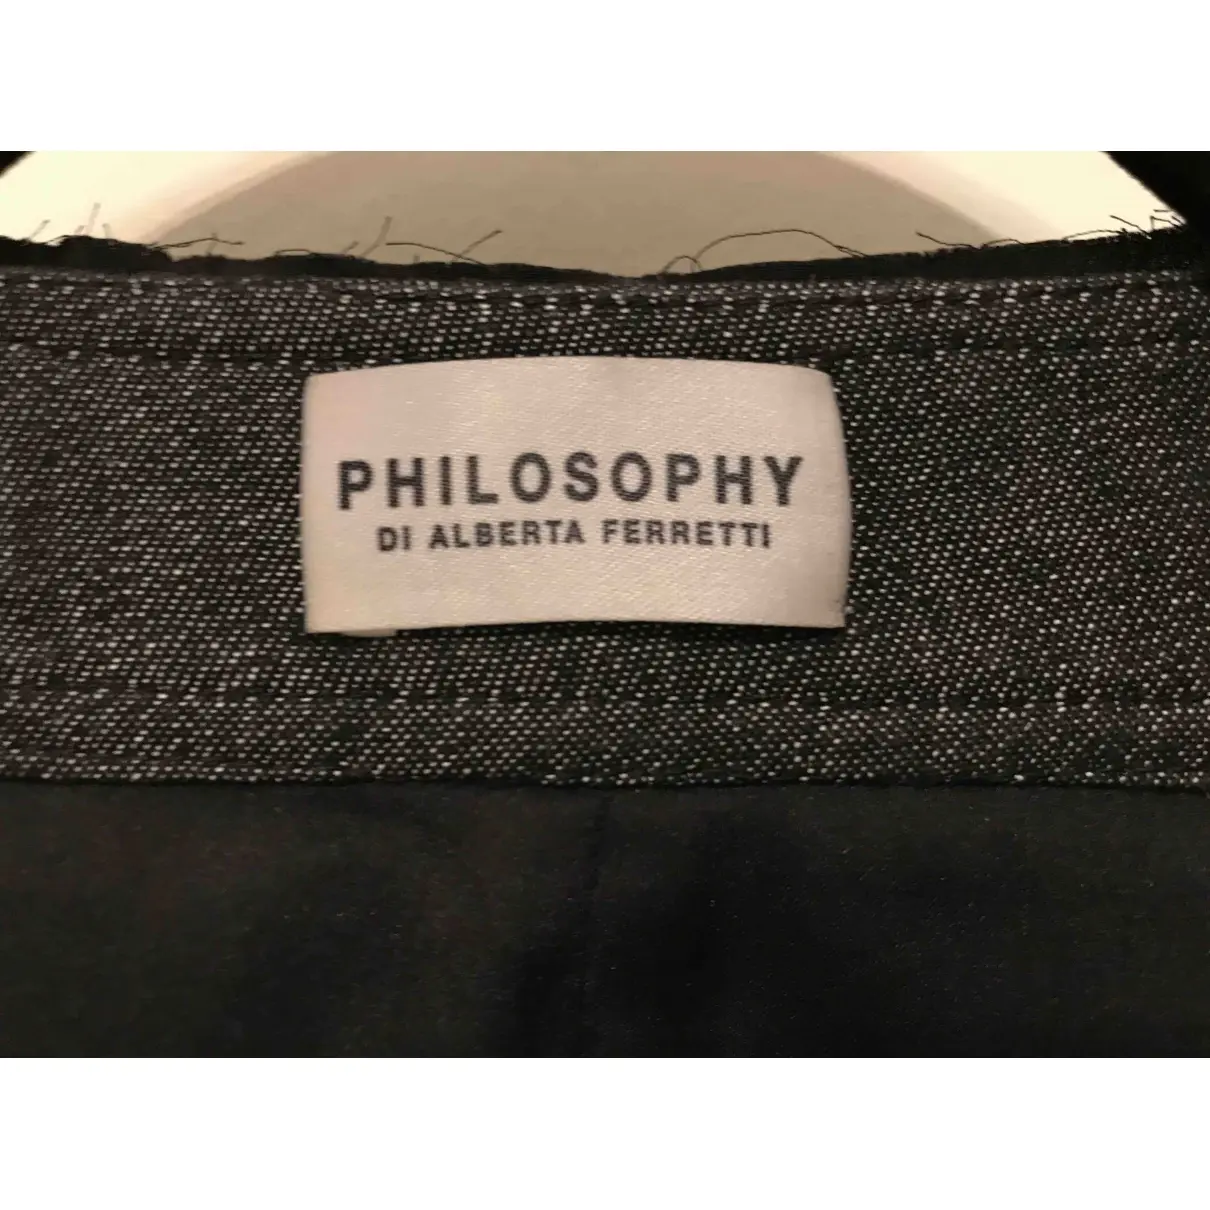 Philosophy Di Alberta Ferretti Jacket for sale